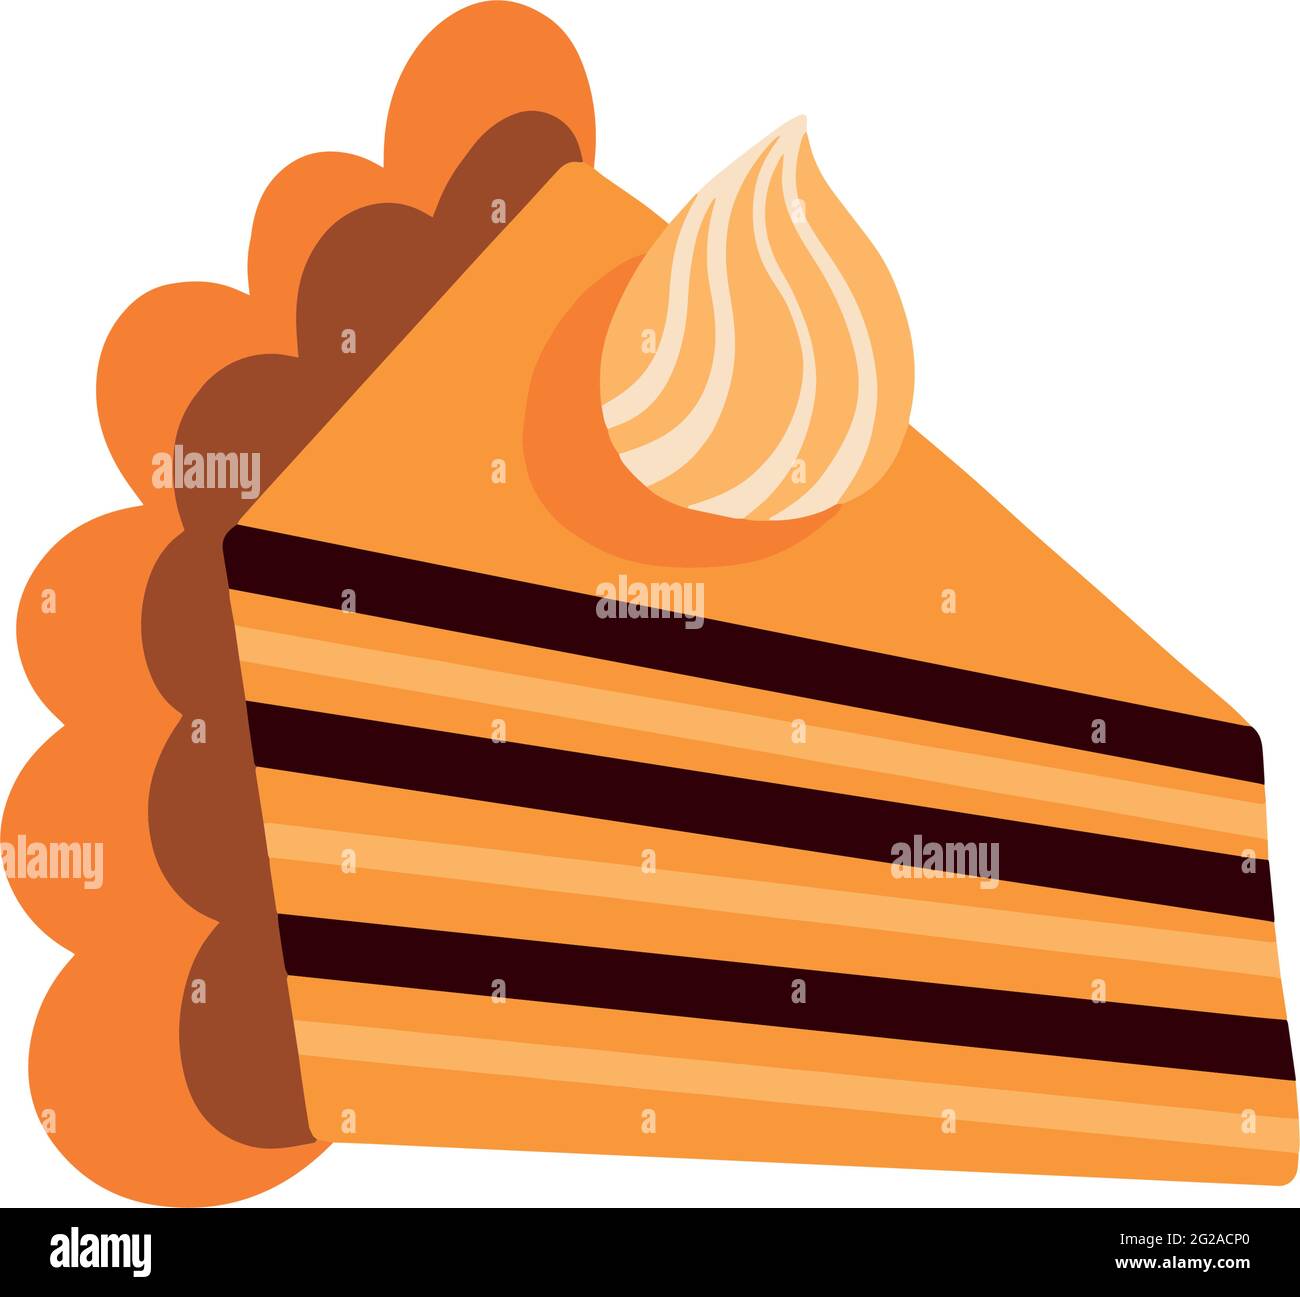 Un pezzo di zucca pie.American torta di zucca fatta in casa con panna montata. Illustrazione vettoriale Illustrazione Vettoriale